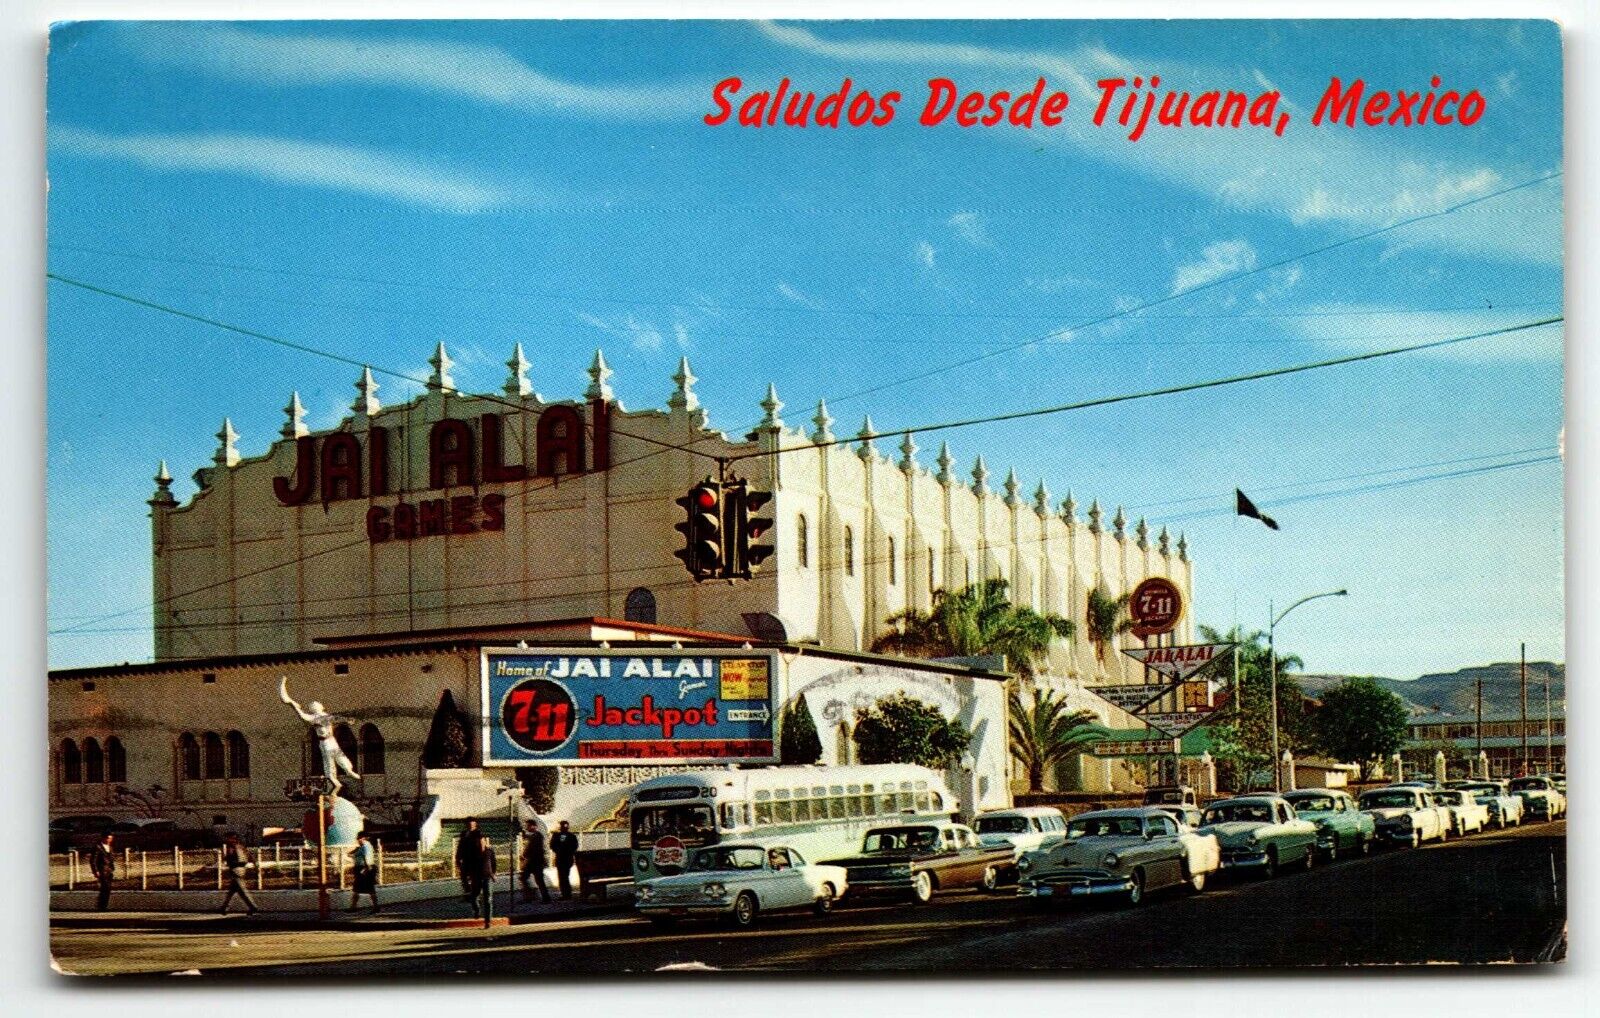 Tijuana Mexico Postcard Jai Alai Stadium Old Bus Cars Street View Fronton Palace